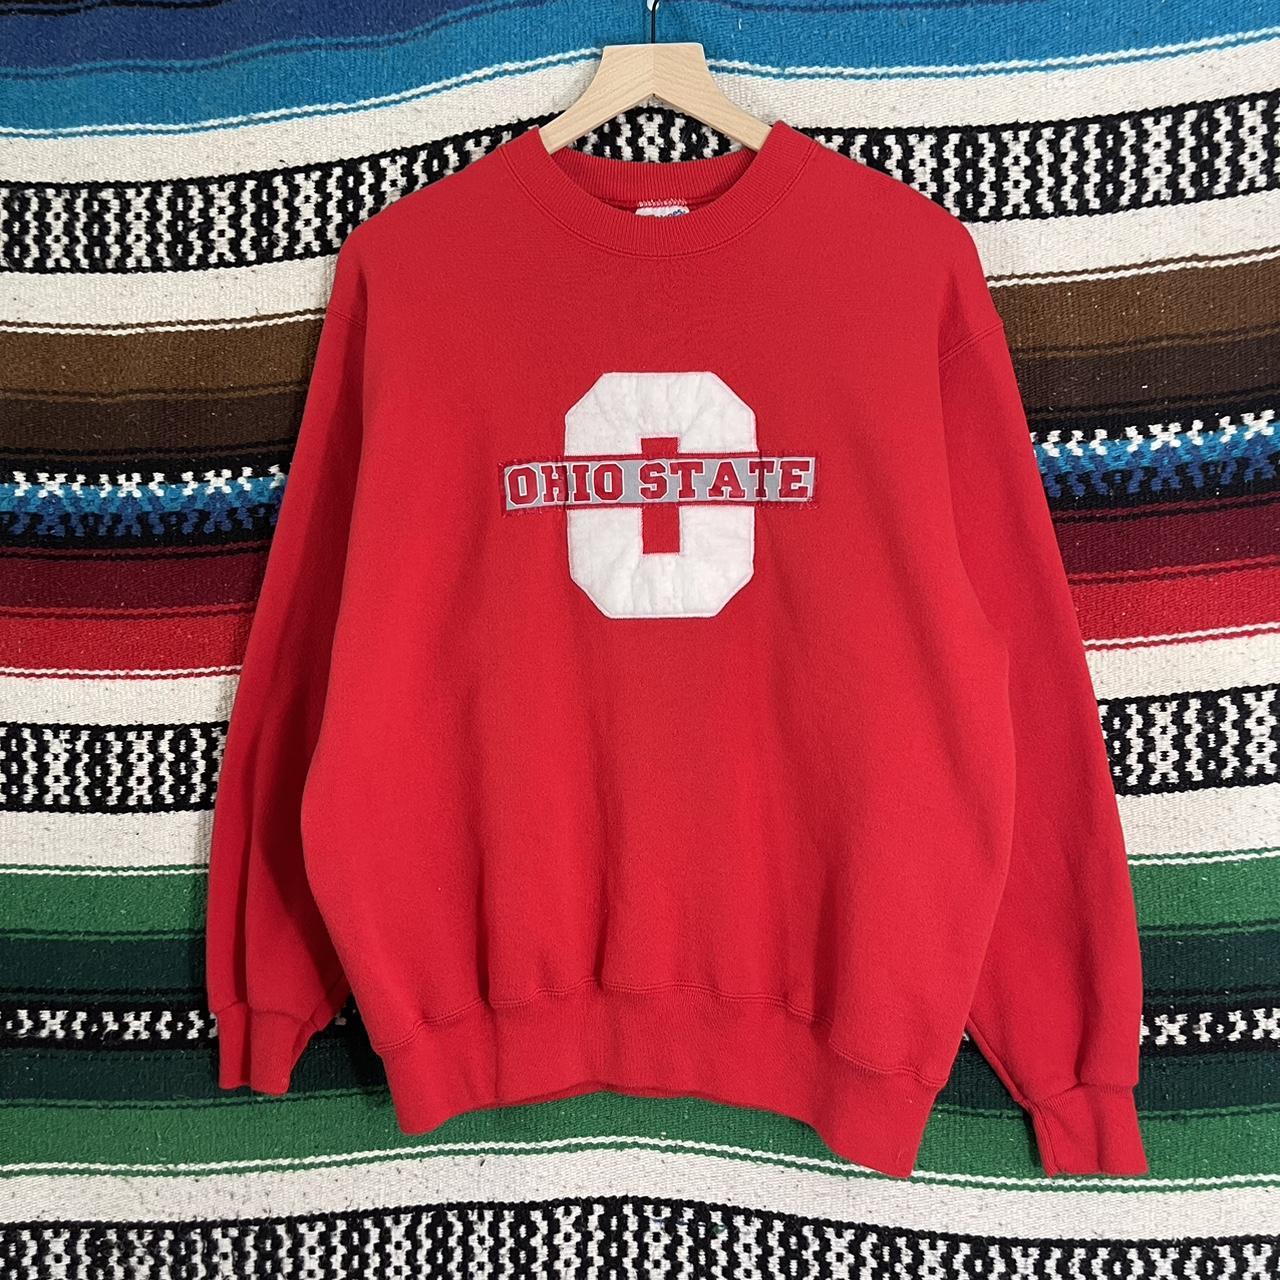 American Vintage Men's Sweatshirt - Red - M